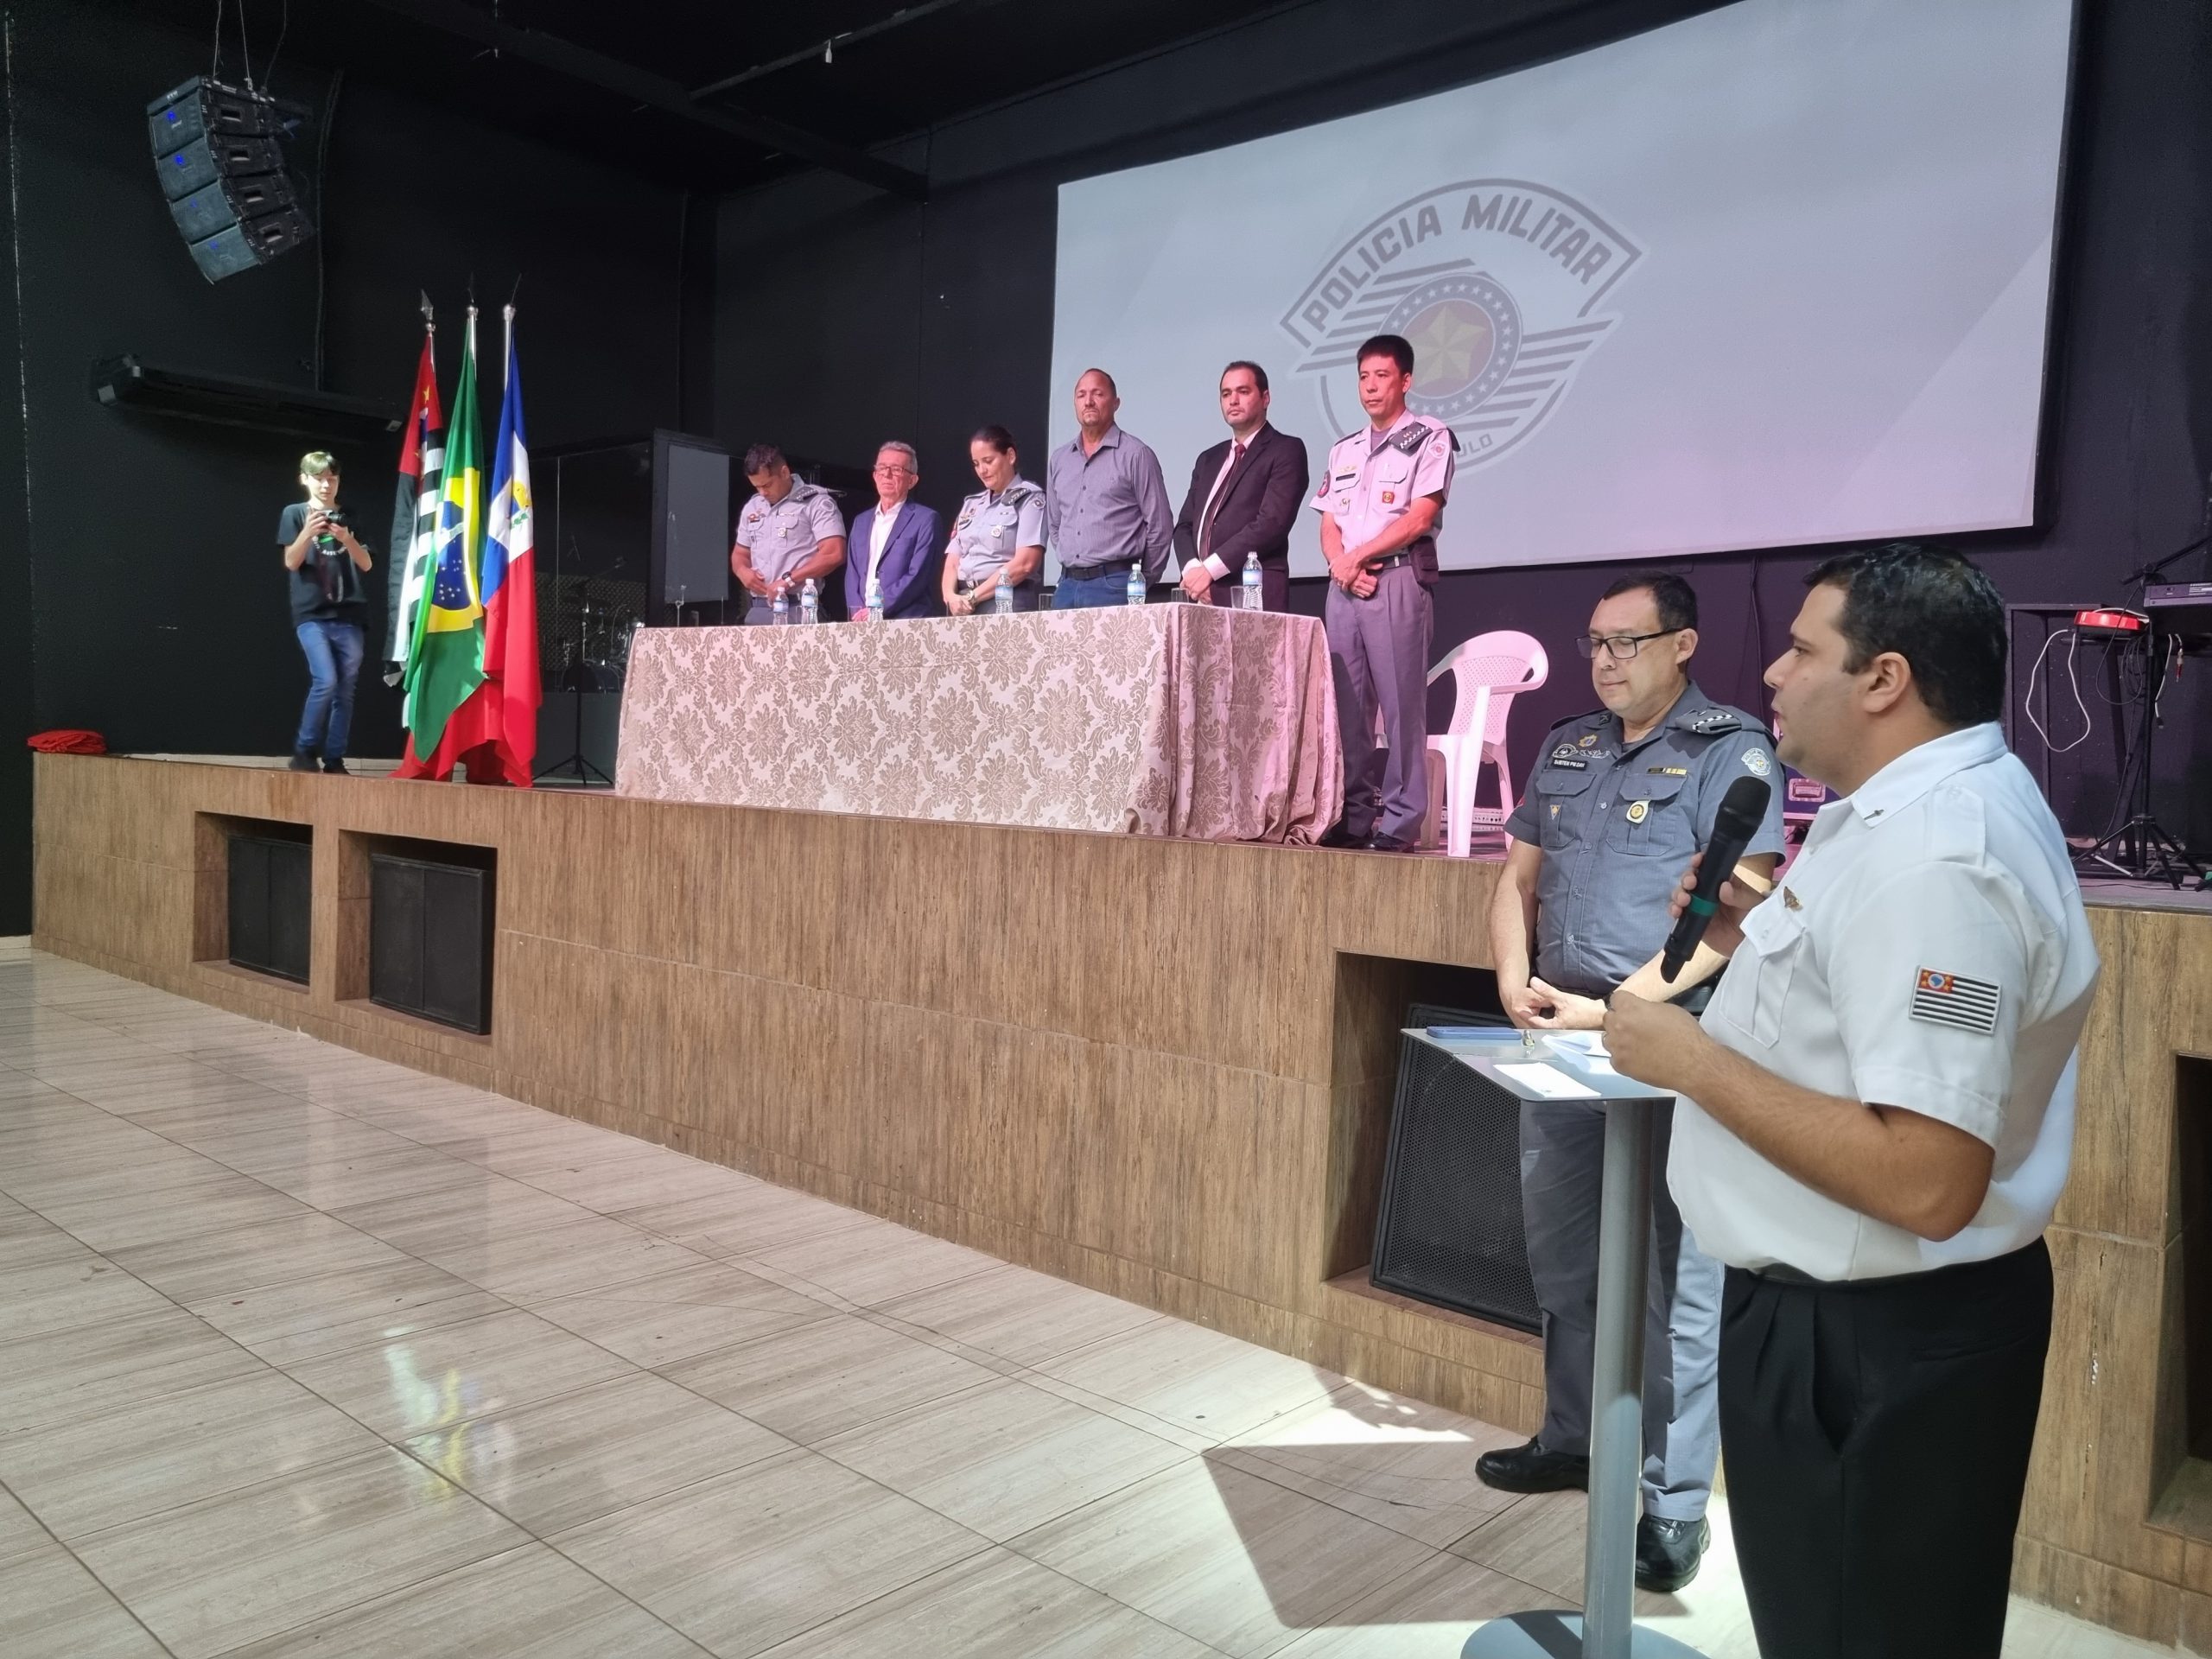 Evento reforça a importância da valorização profissional do policial militar em Mirandópolis